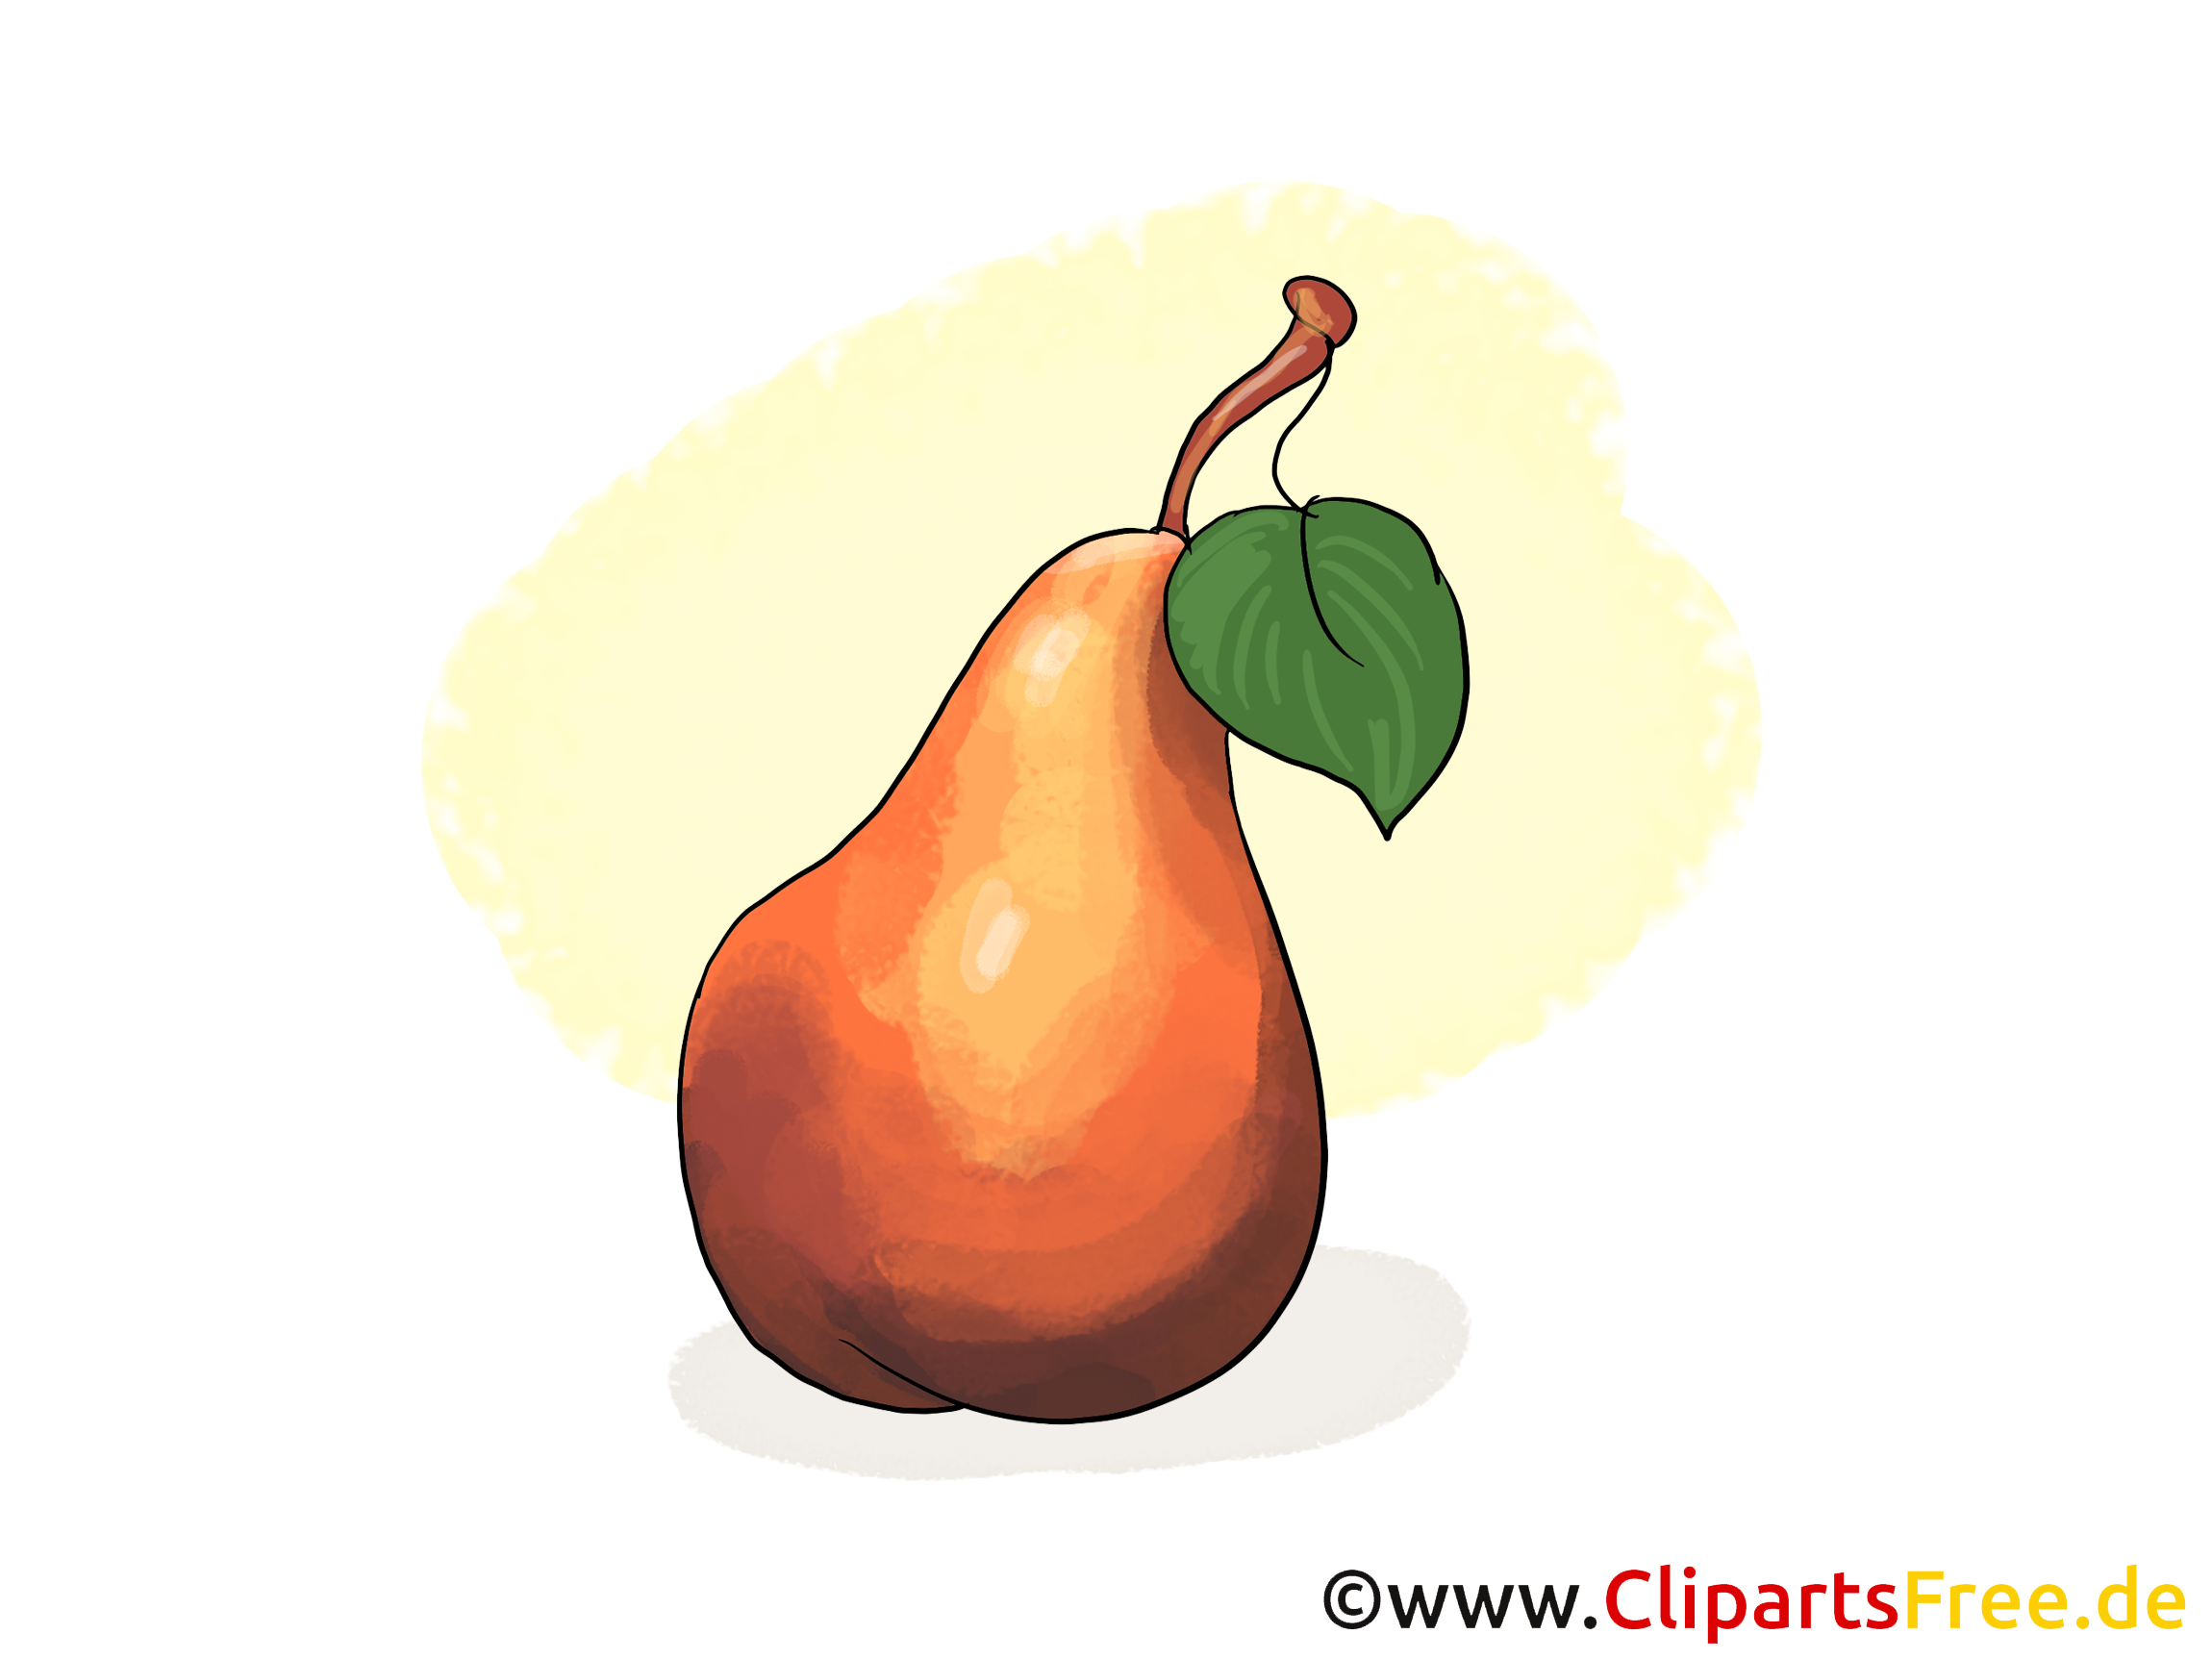 Poire illustration gratuite - Fruits clipart